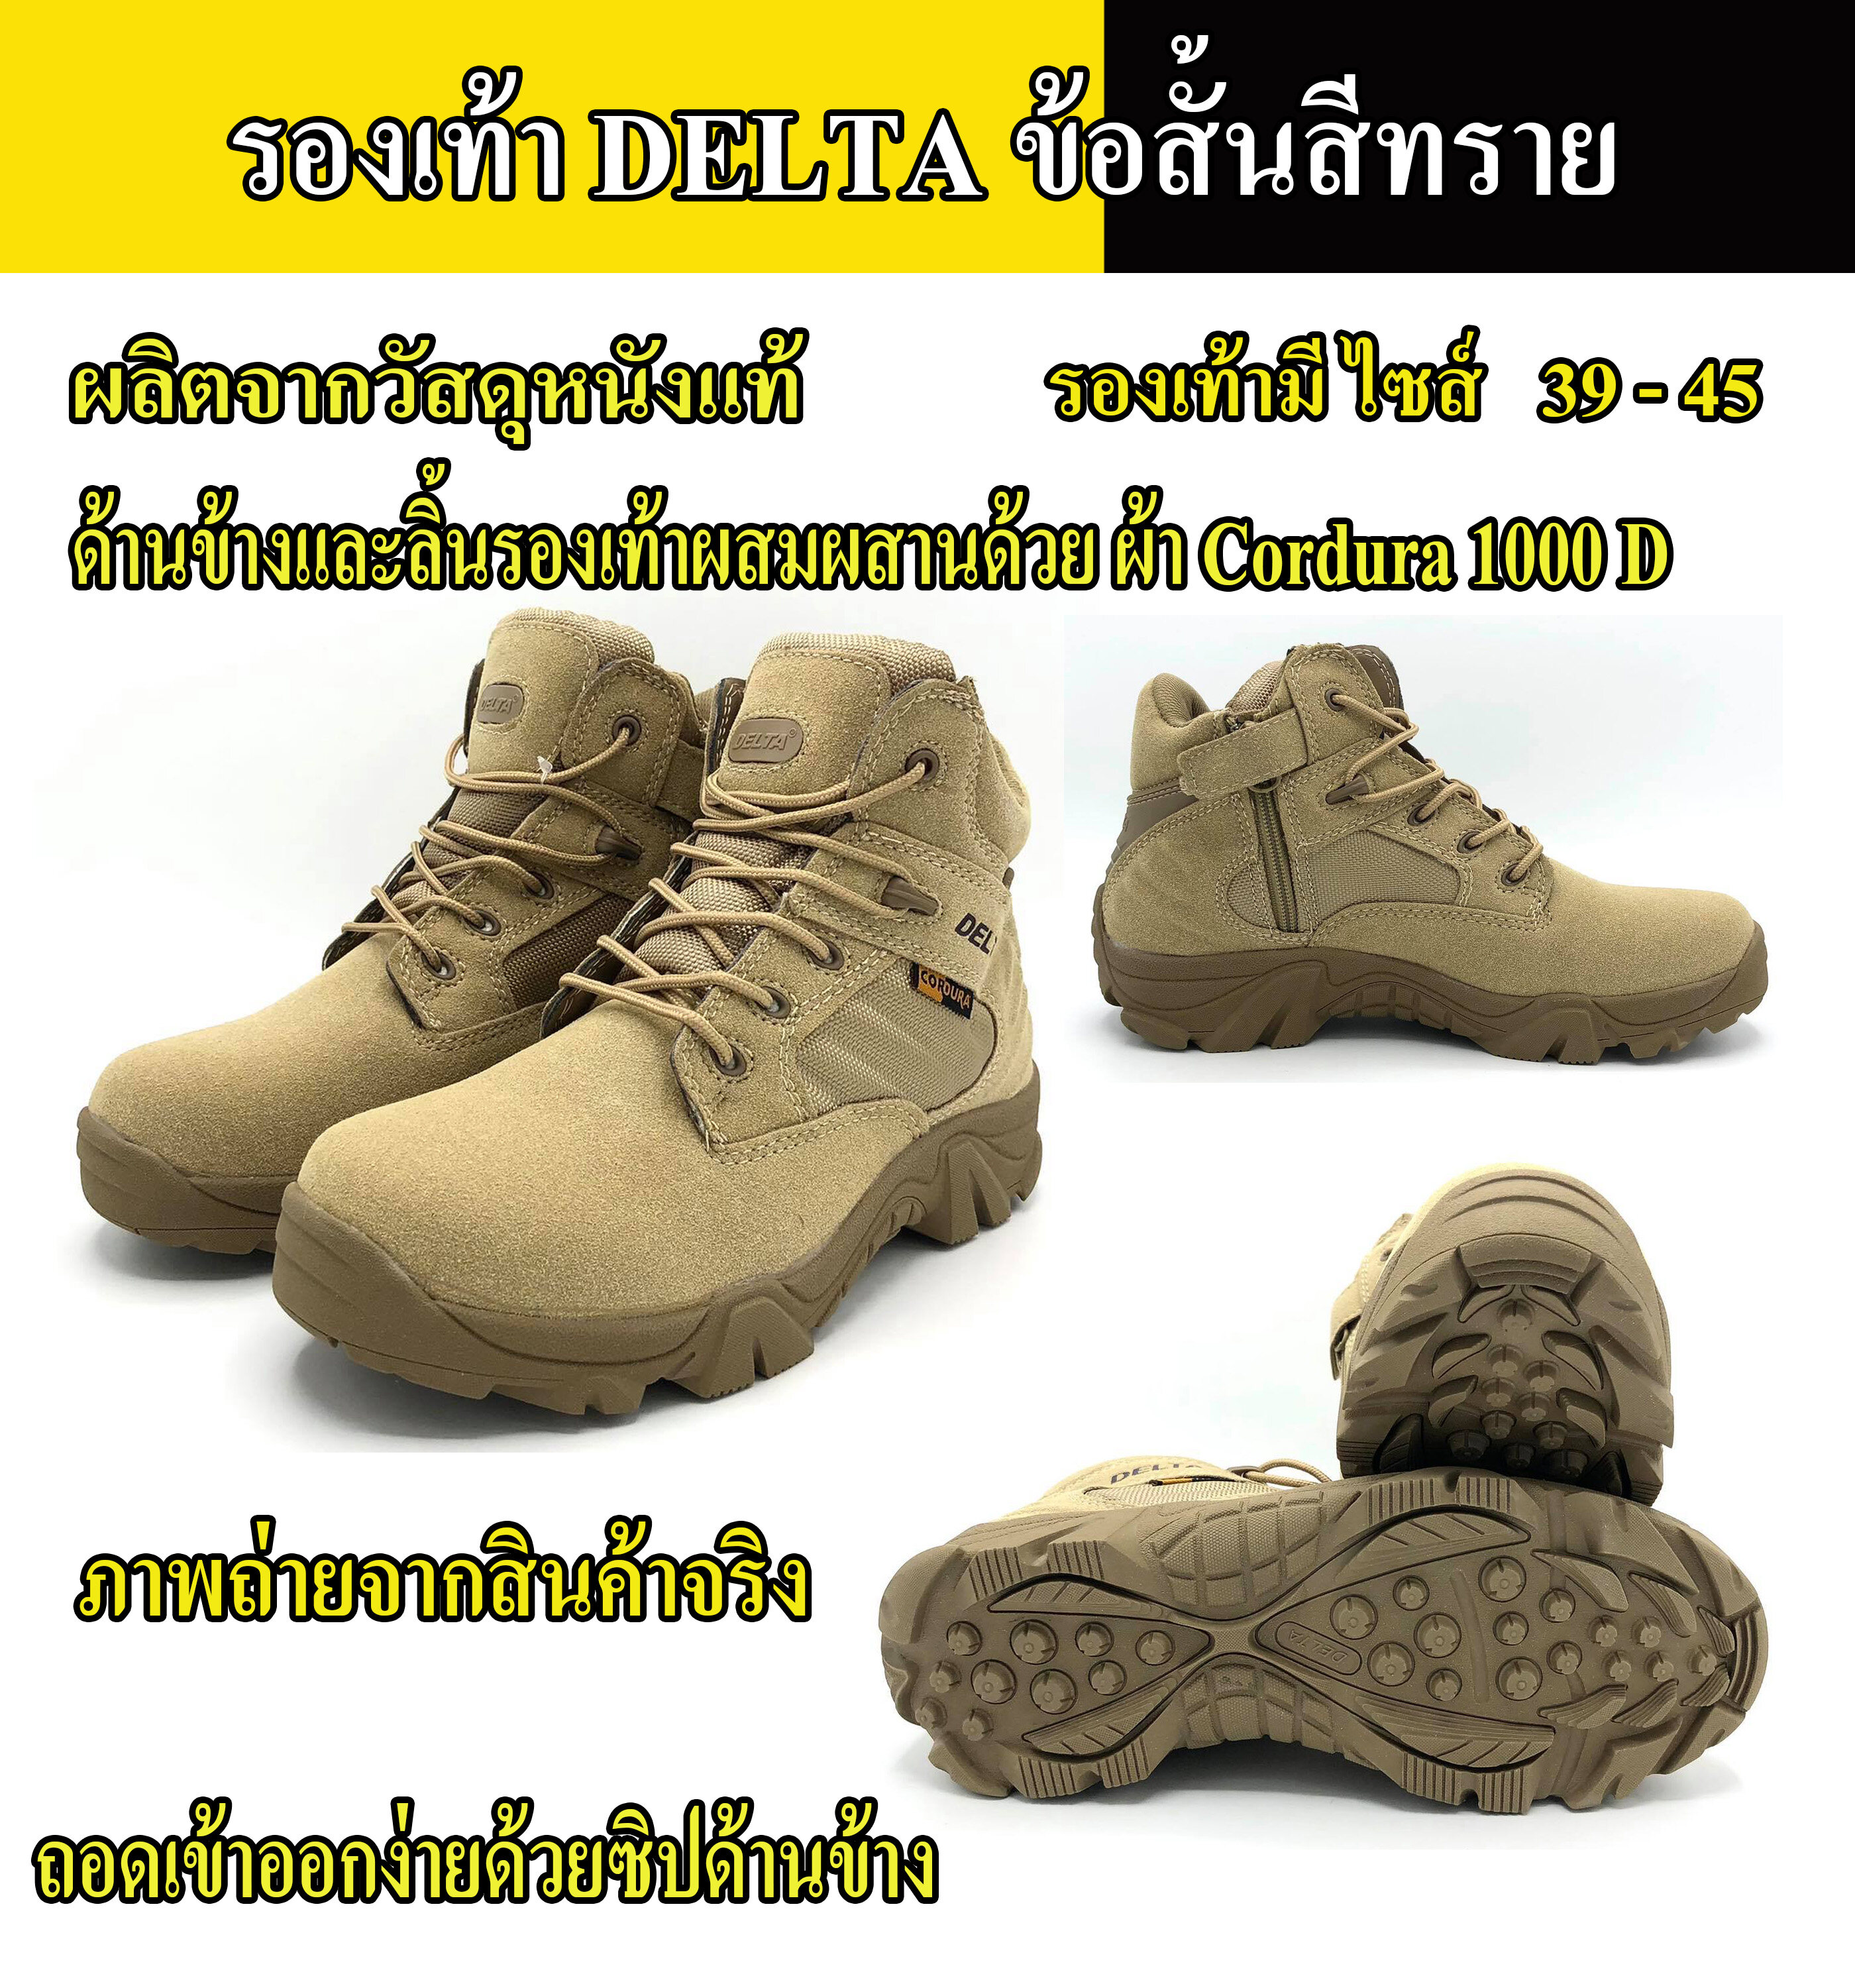 รองเท้าข้อสั้น Delta ผลิตจากหนังแท้ สีทราย เสริมด้วยผ้า Cordura  1000 D ทอละเอียดที่มีความหนาแน่นและทนทานสูง (สินค้าถ่ายจากของจริง)